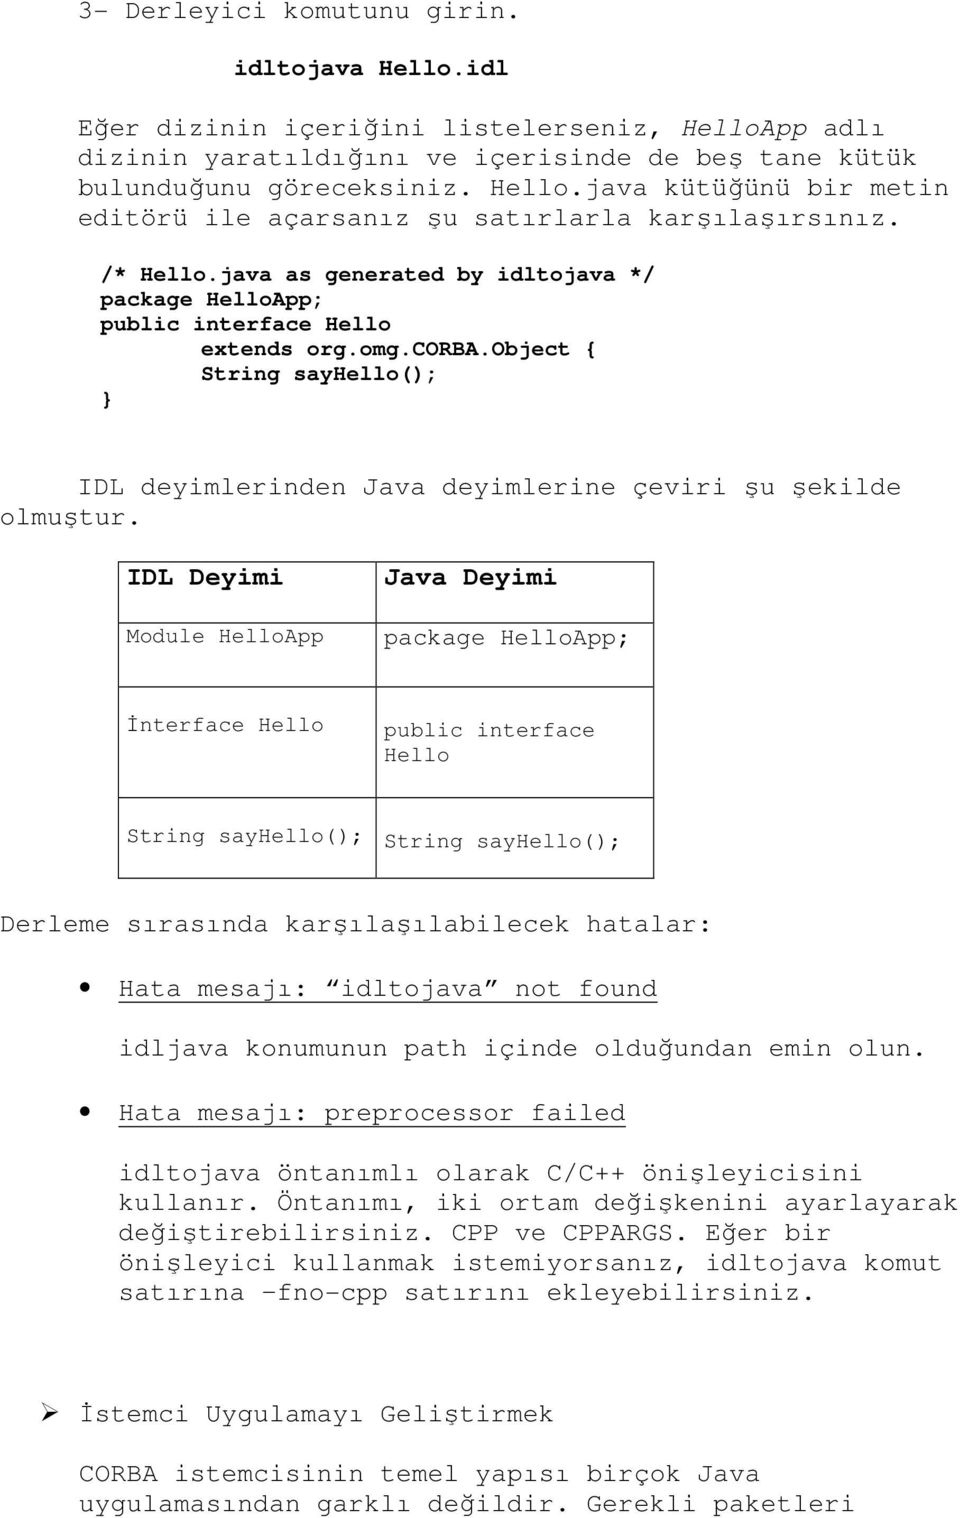 IDL Deyimi Module HelloApp Java Deyimi package HelloApp; İnterface Hello public interface Hello String sayhello(); String sayhello(); Derleme sırasında karşılaşılabilecek hatalar: Hata mesajı: